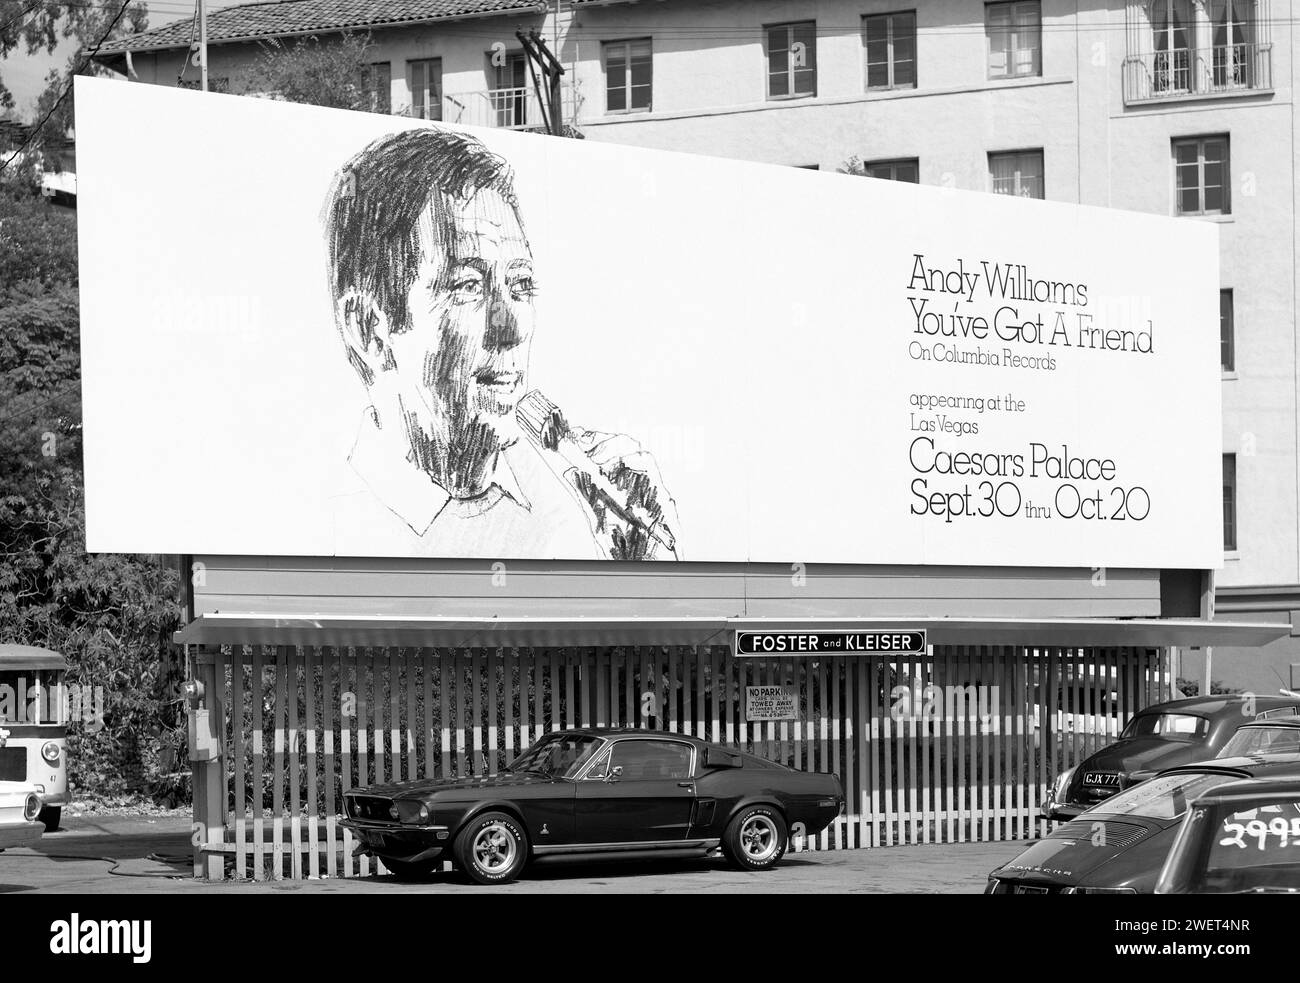 Eine Plakatwand aus dem Jahr 1971 auf dem Sunset Strip wirbt für ein Album und einen Auftritt des Sängers Andy Williams in Las Vegas. West Hollywood, Kalifornien, USA Stockfoto